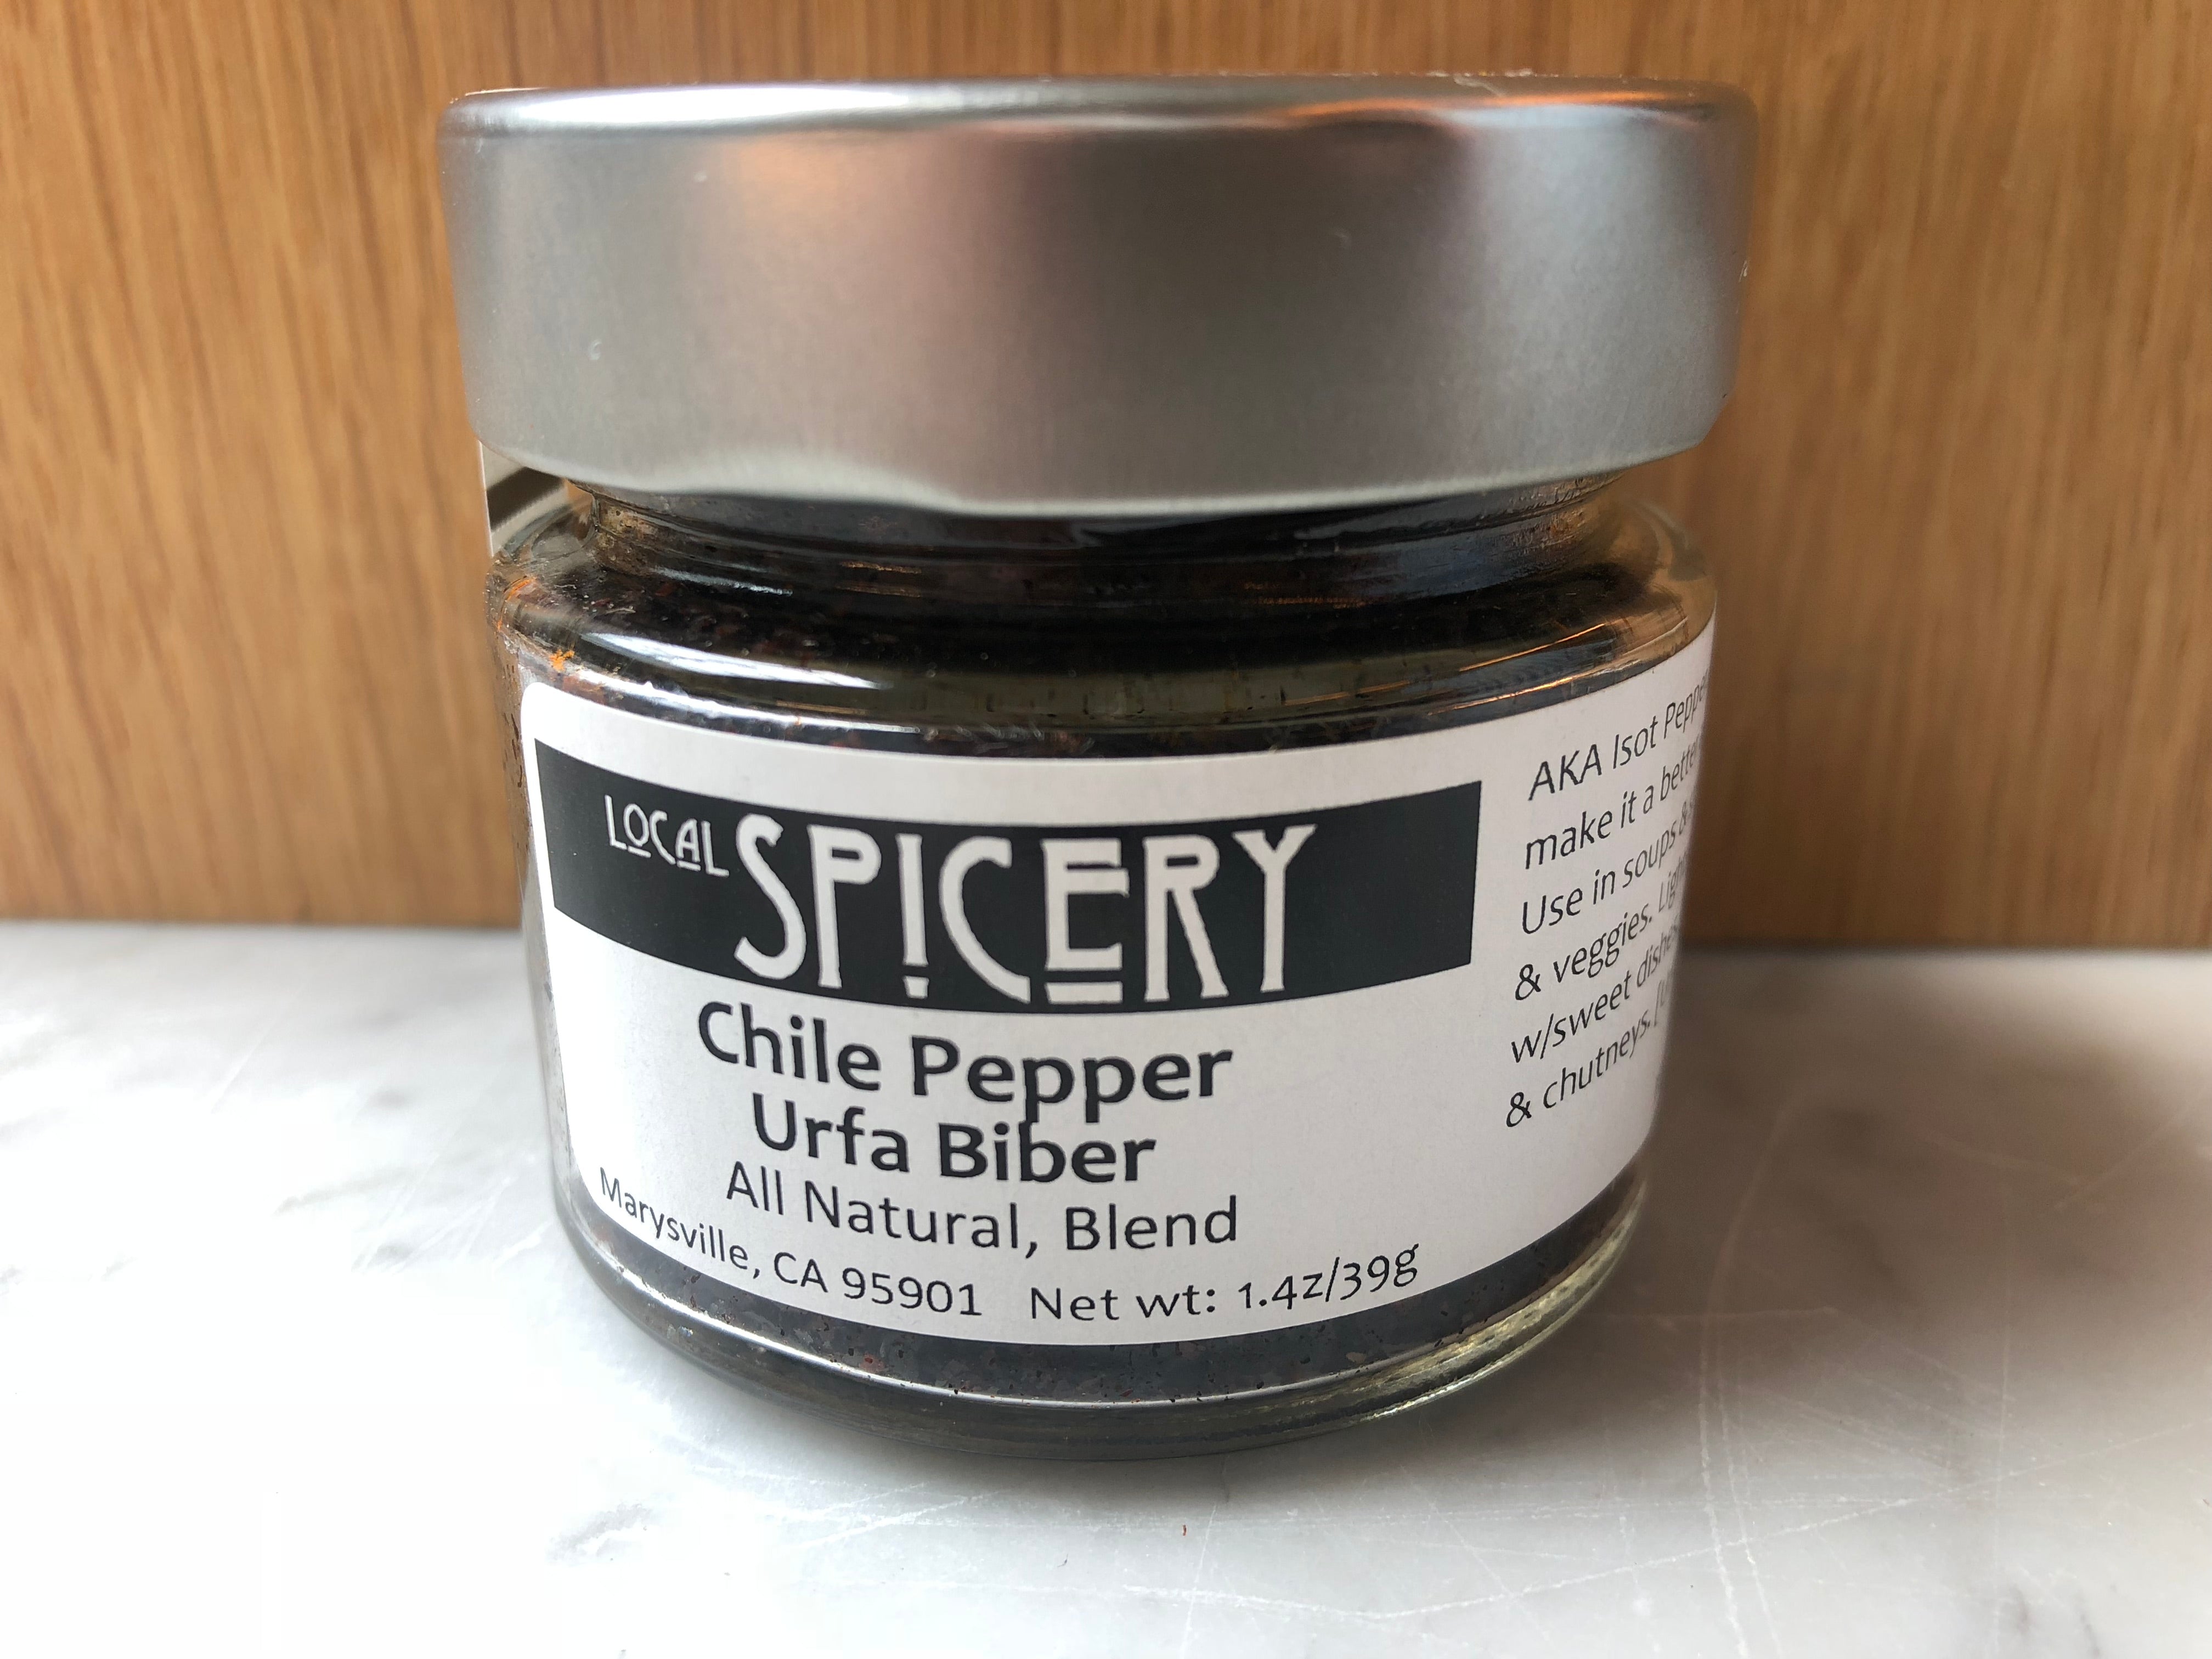 Local Spicery, Chile Pepper Urfa Biber, All Natural, Blend